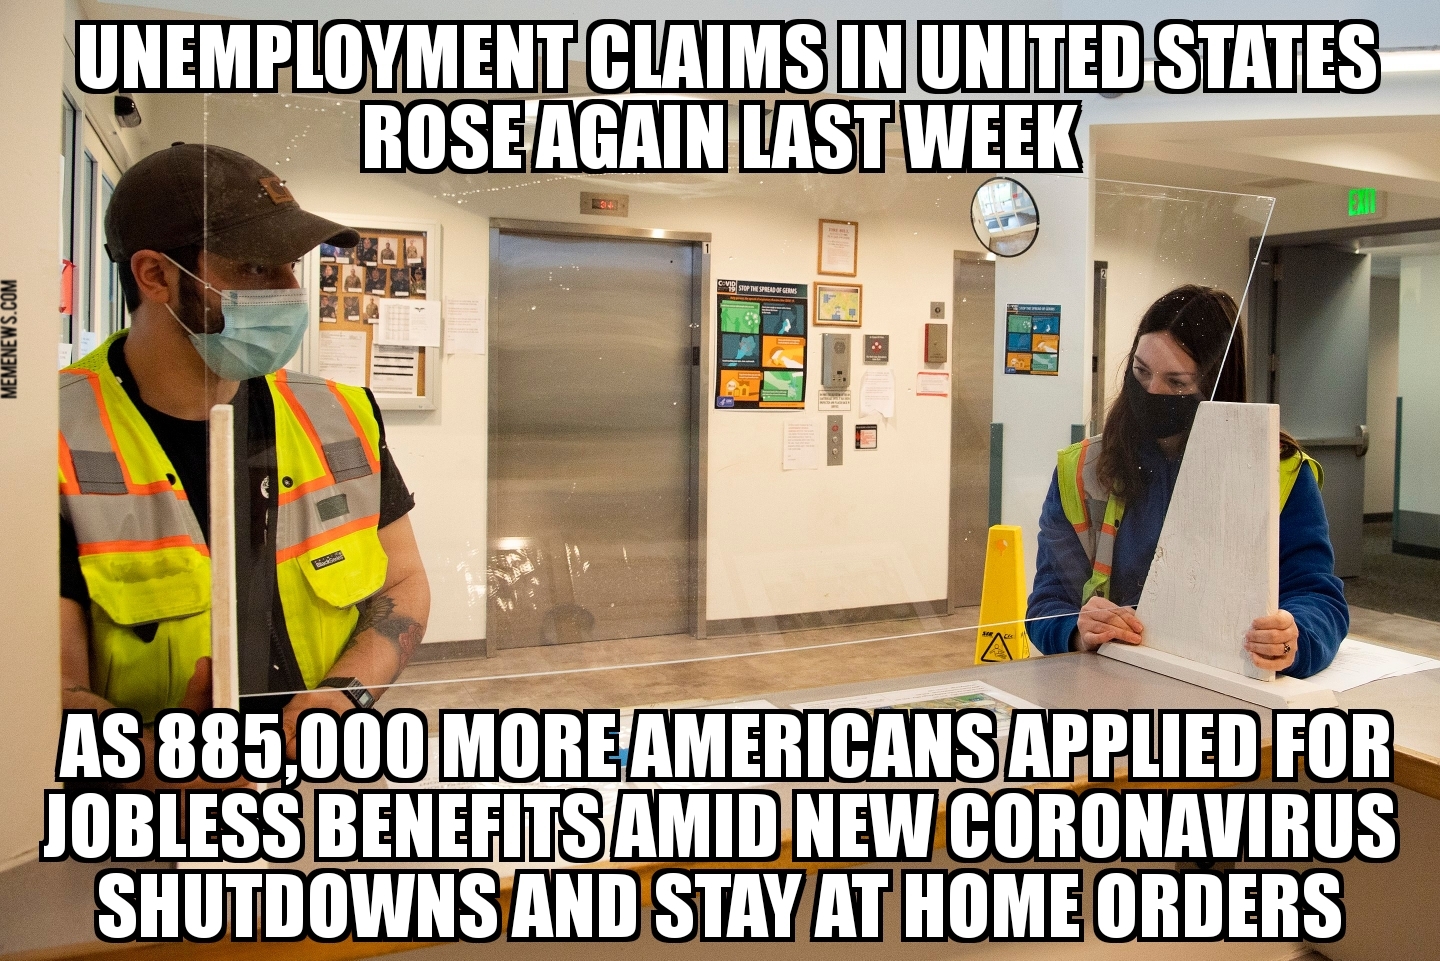 U.S. unemployment claims rise